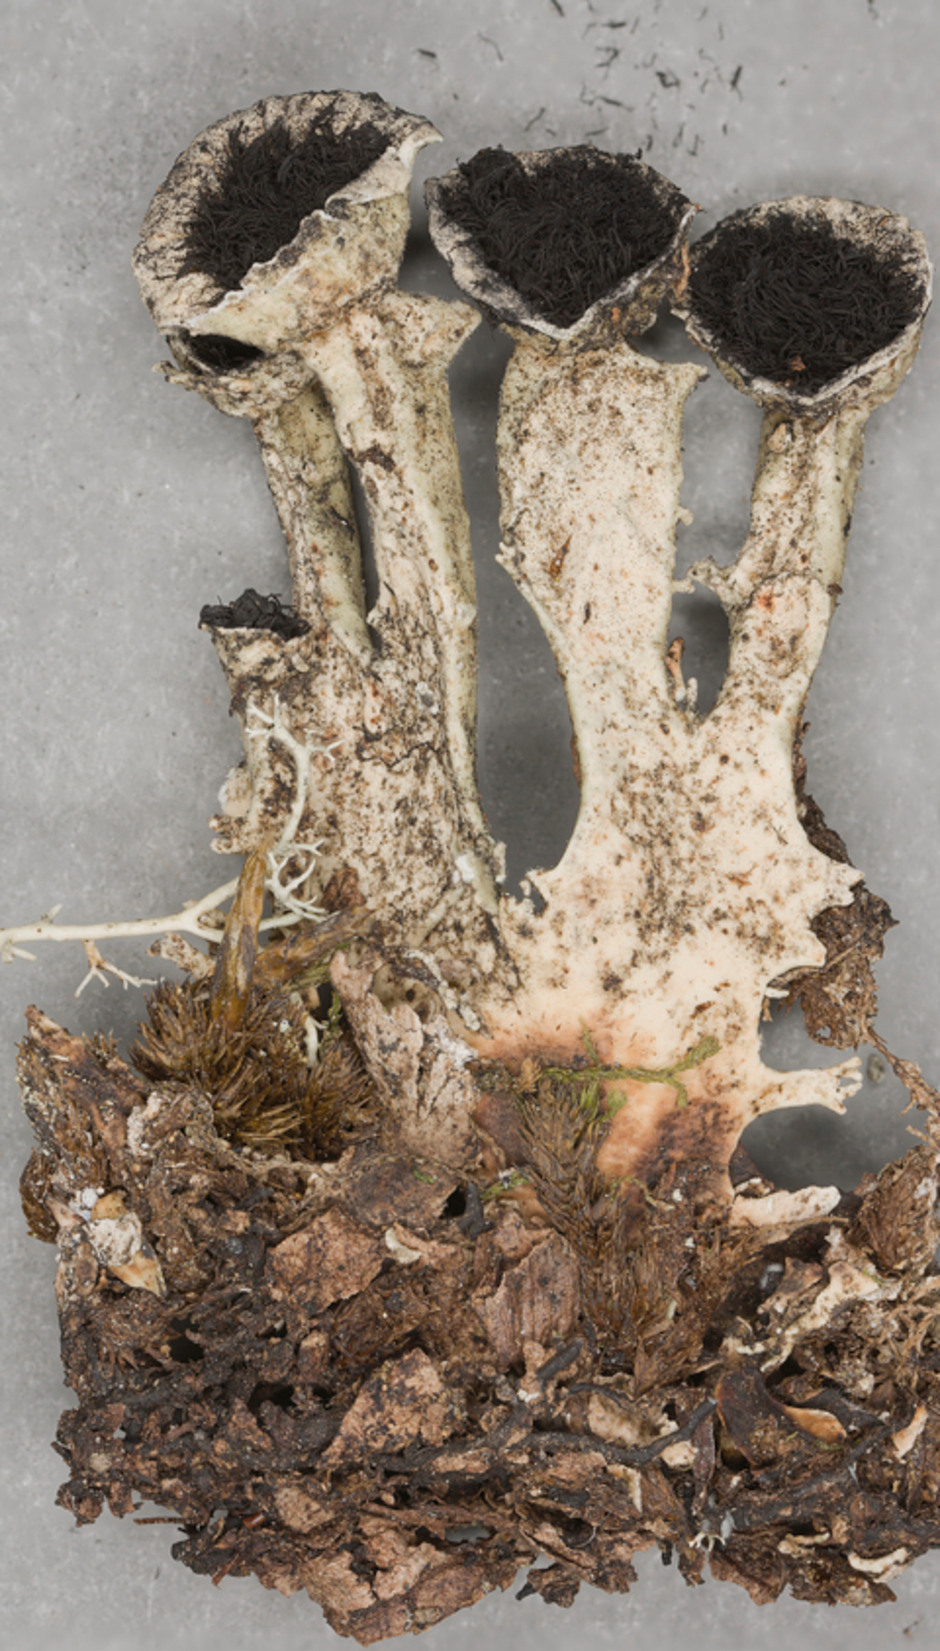 Bunodophoron scrobiculatum. Insamlad i Nya Zeeland 1986 av Leif Tibell. Ur Naturhistoriska Riksmuseets samlingar. Föremålsnummer F74716. Foto: Christopher Reisborg.